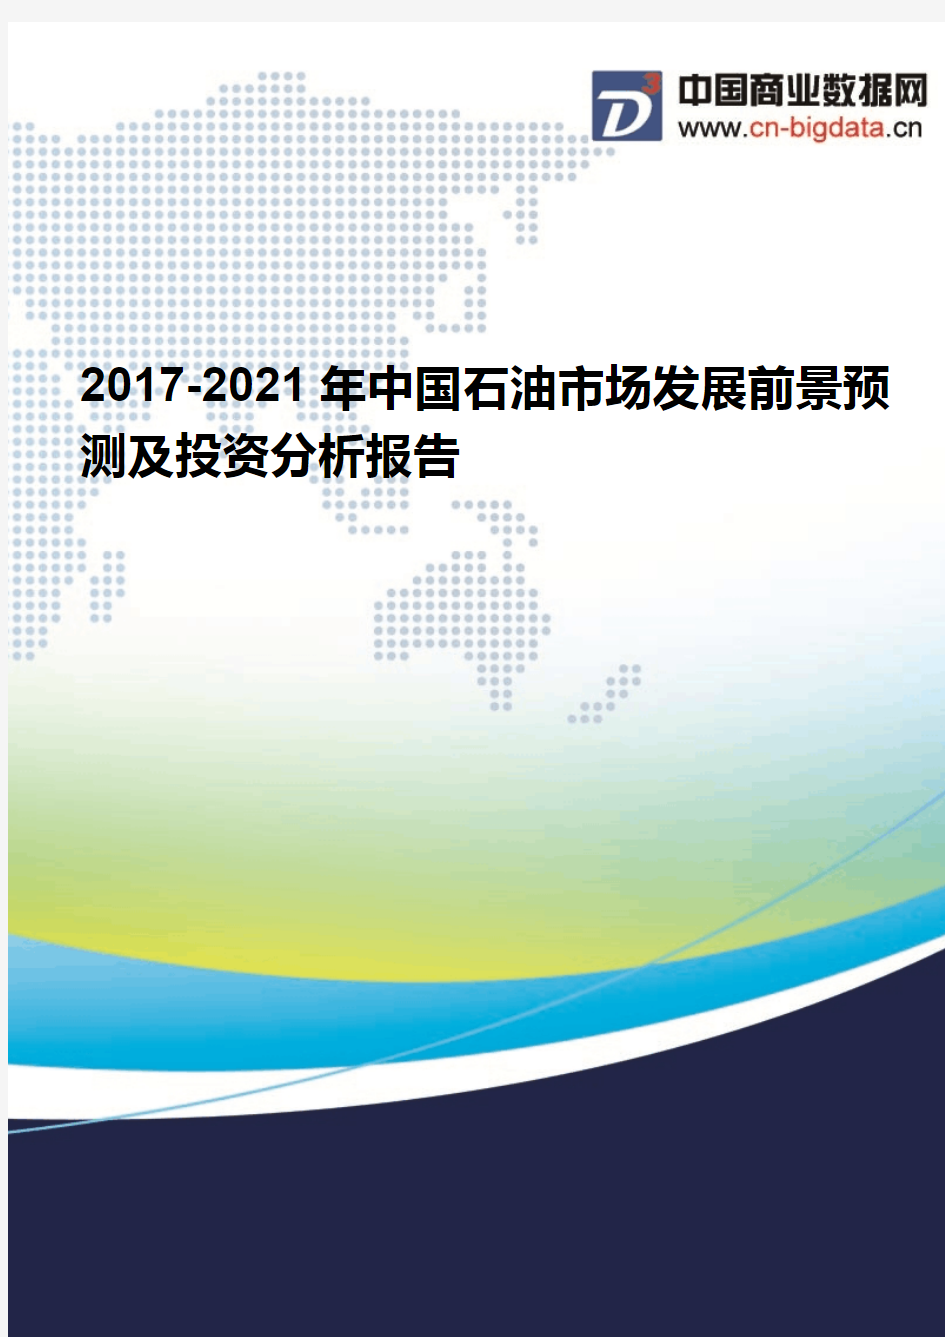 (2017版目录)2017-2021年中国石油市场发展前景预测及投资分析报告